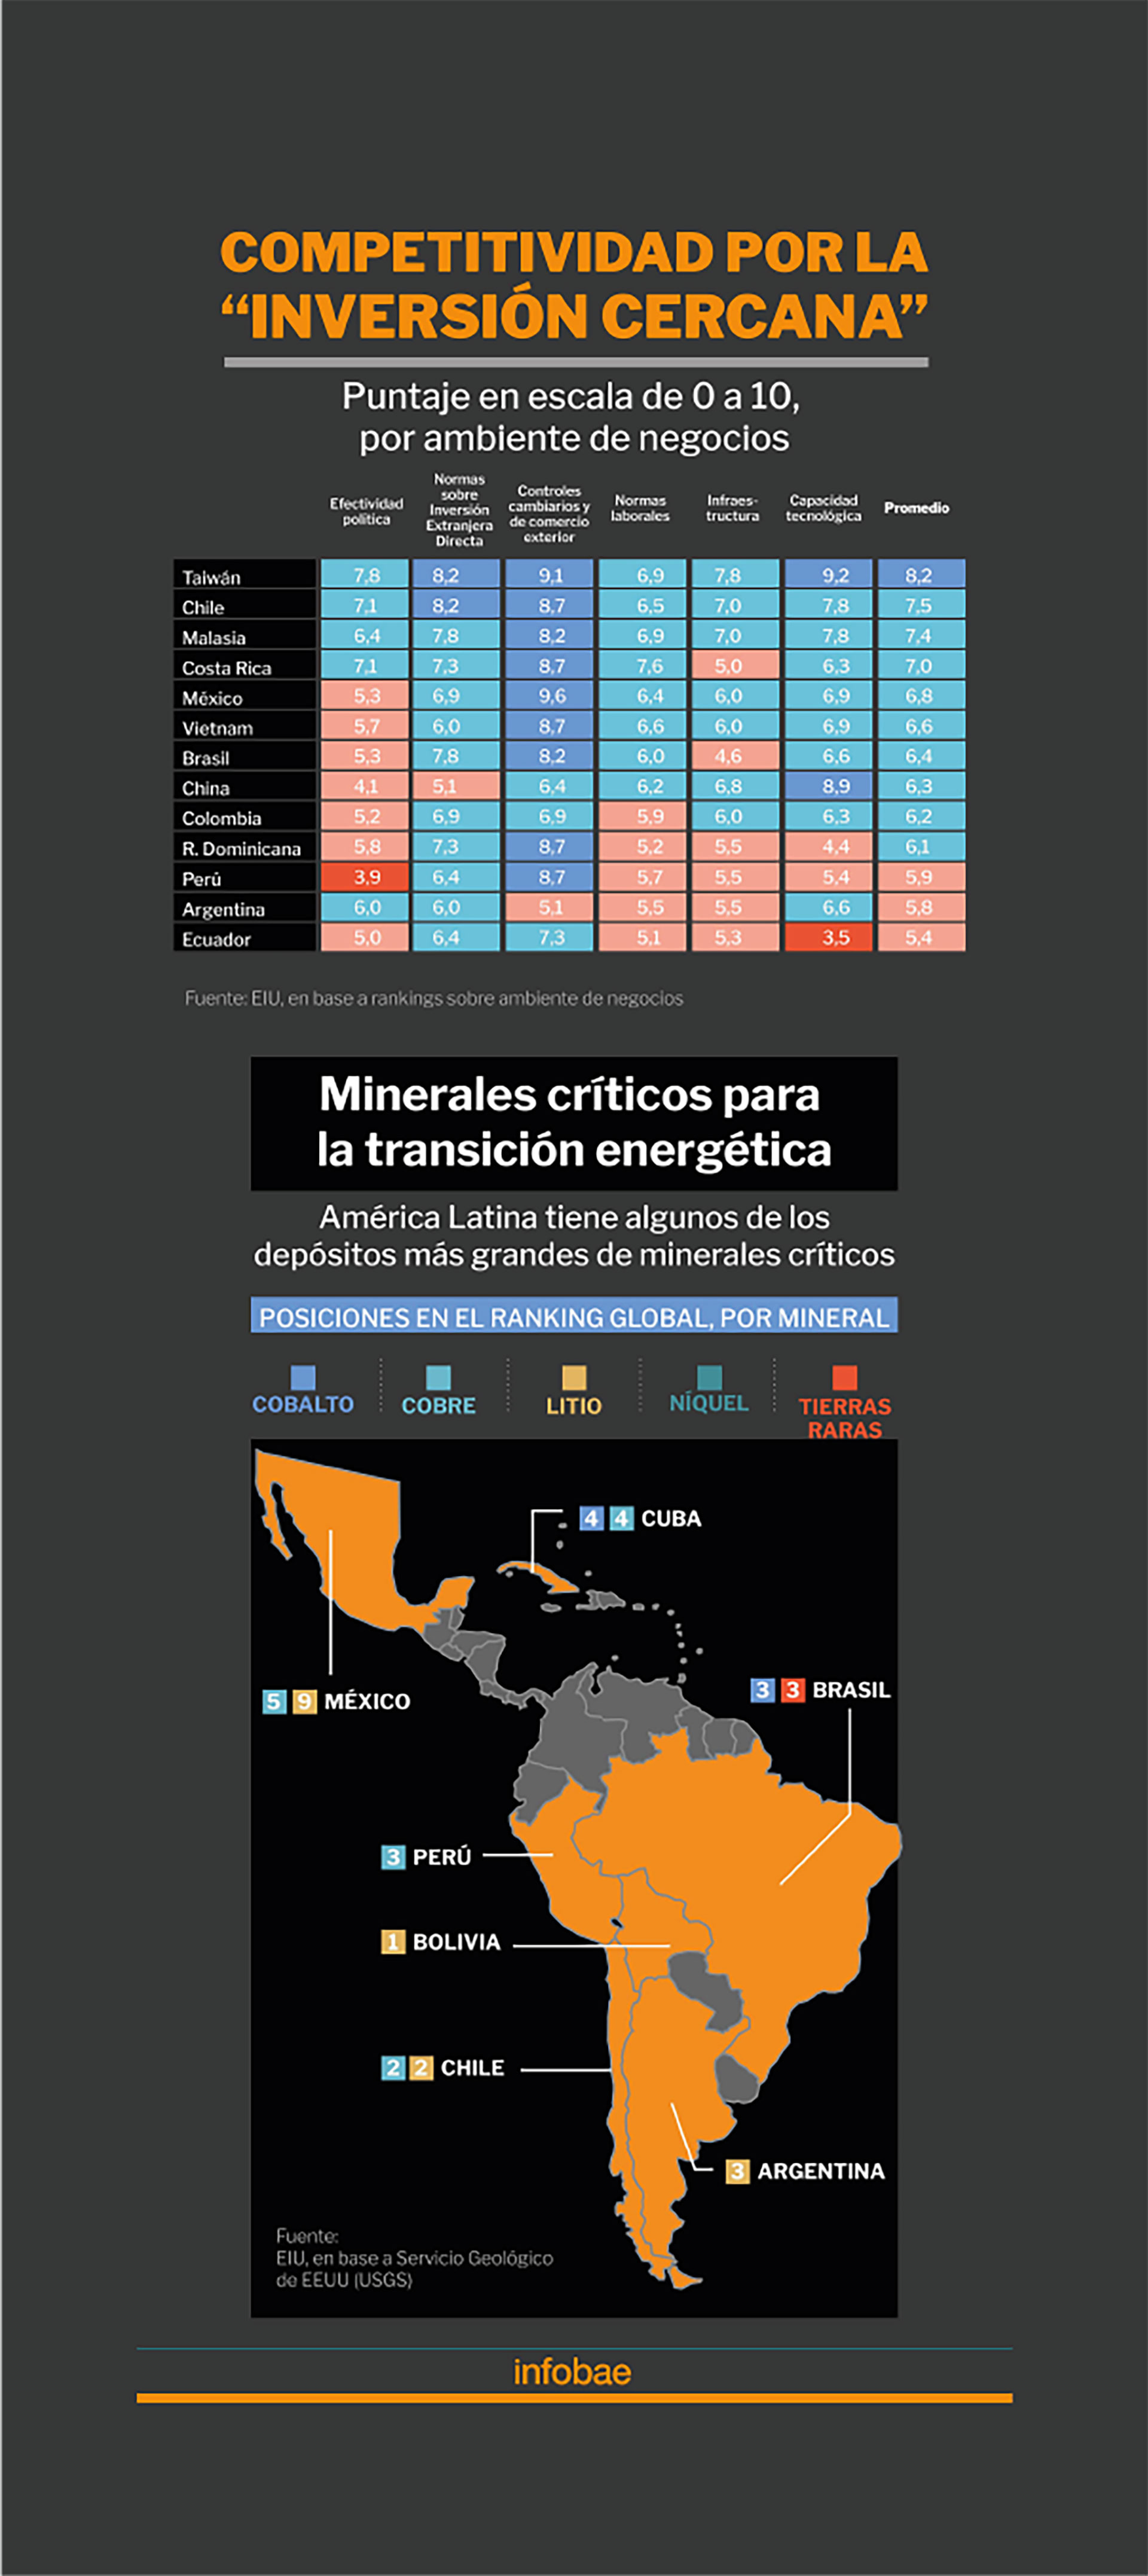 El cuadro superior evalúa la competividad de algunos países asiáticos y latinoamericanos para atraer "nearshoring". El mapa en la parte inferior provee datos acerca de las reservas de "minerales críticos" 